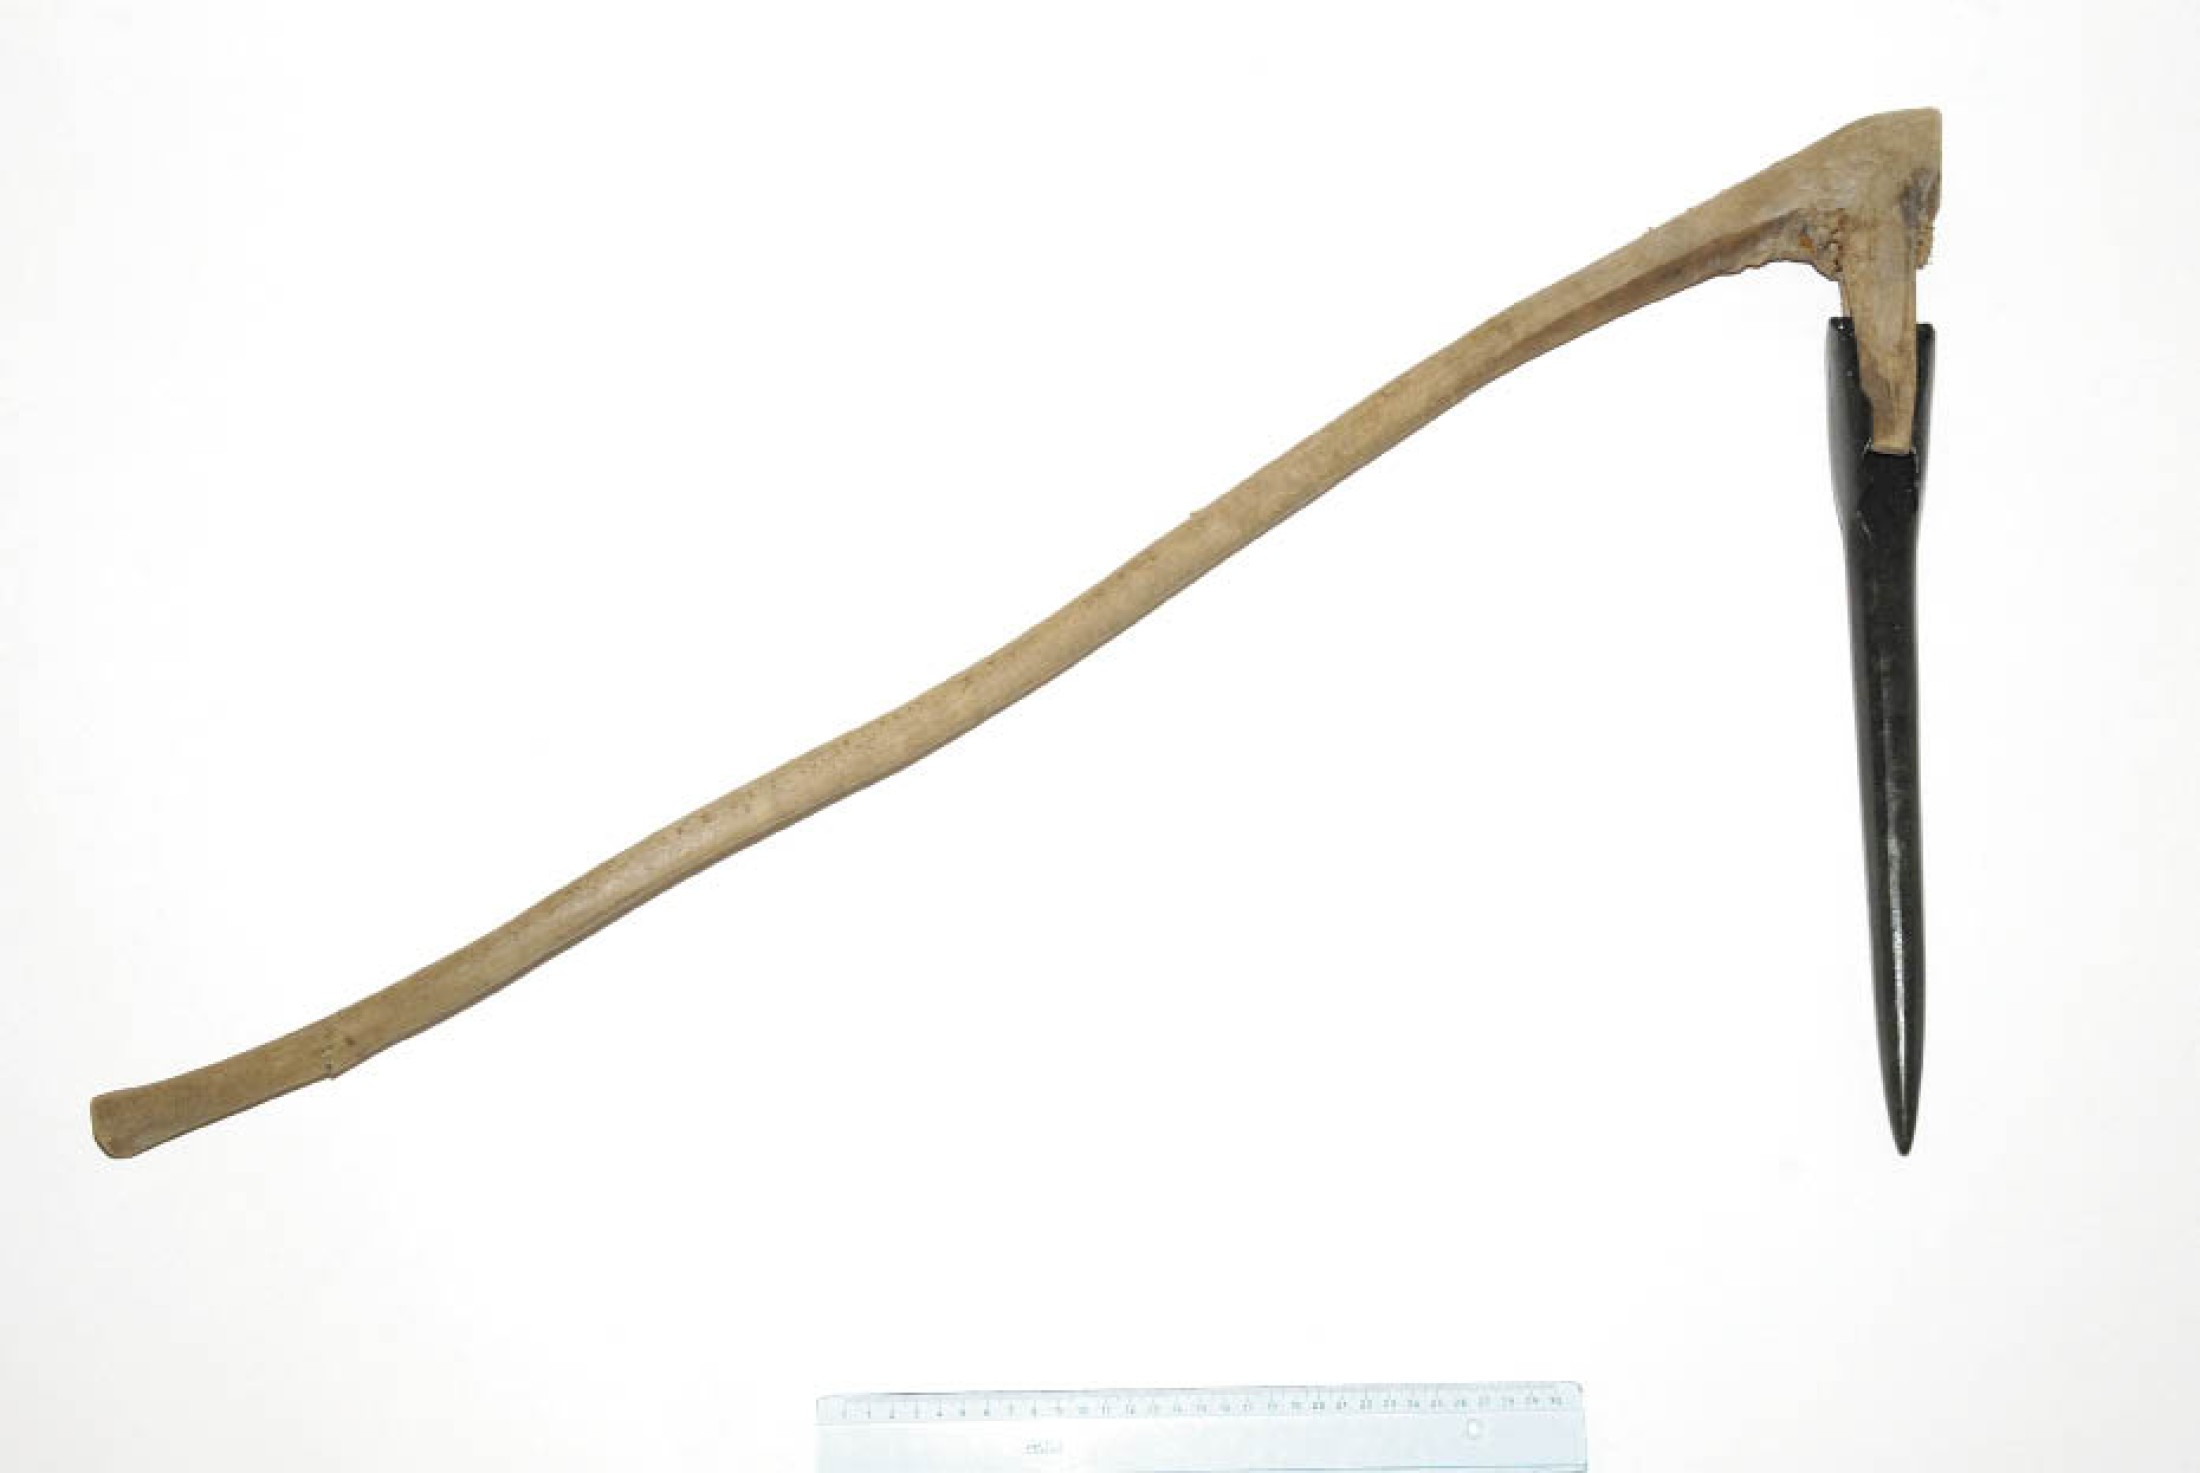 : Knieholzschäftung und Bronzepickel, wie sie im bronzezeitlichen Bergbau in Hallstatt verwendet wurden. (A. W. Rausch - NHM Wien)